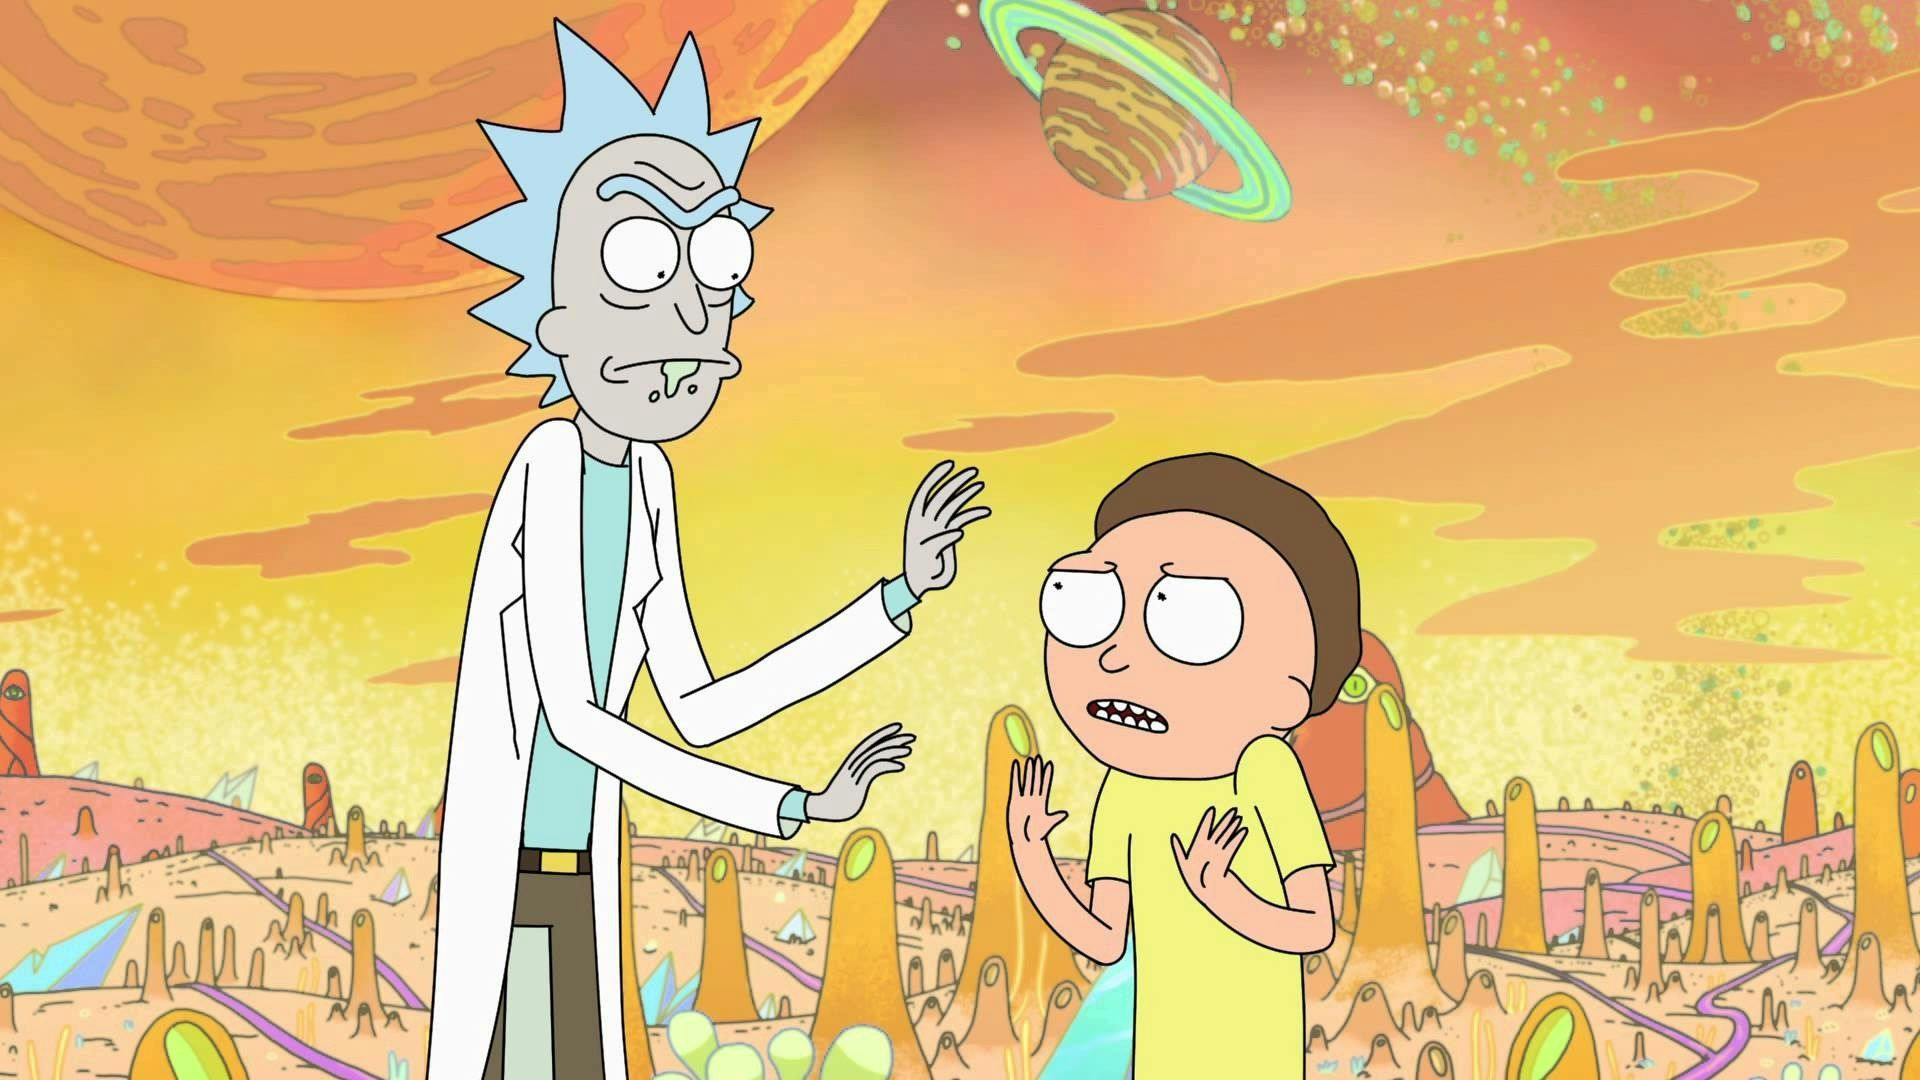 Rick and Morty main image